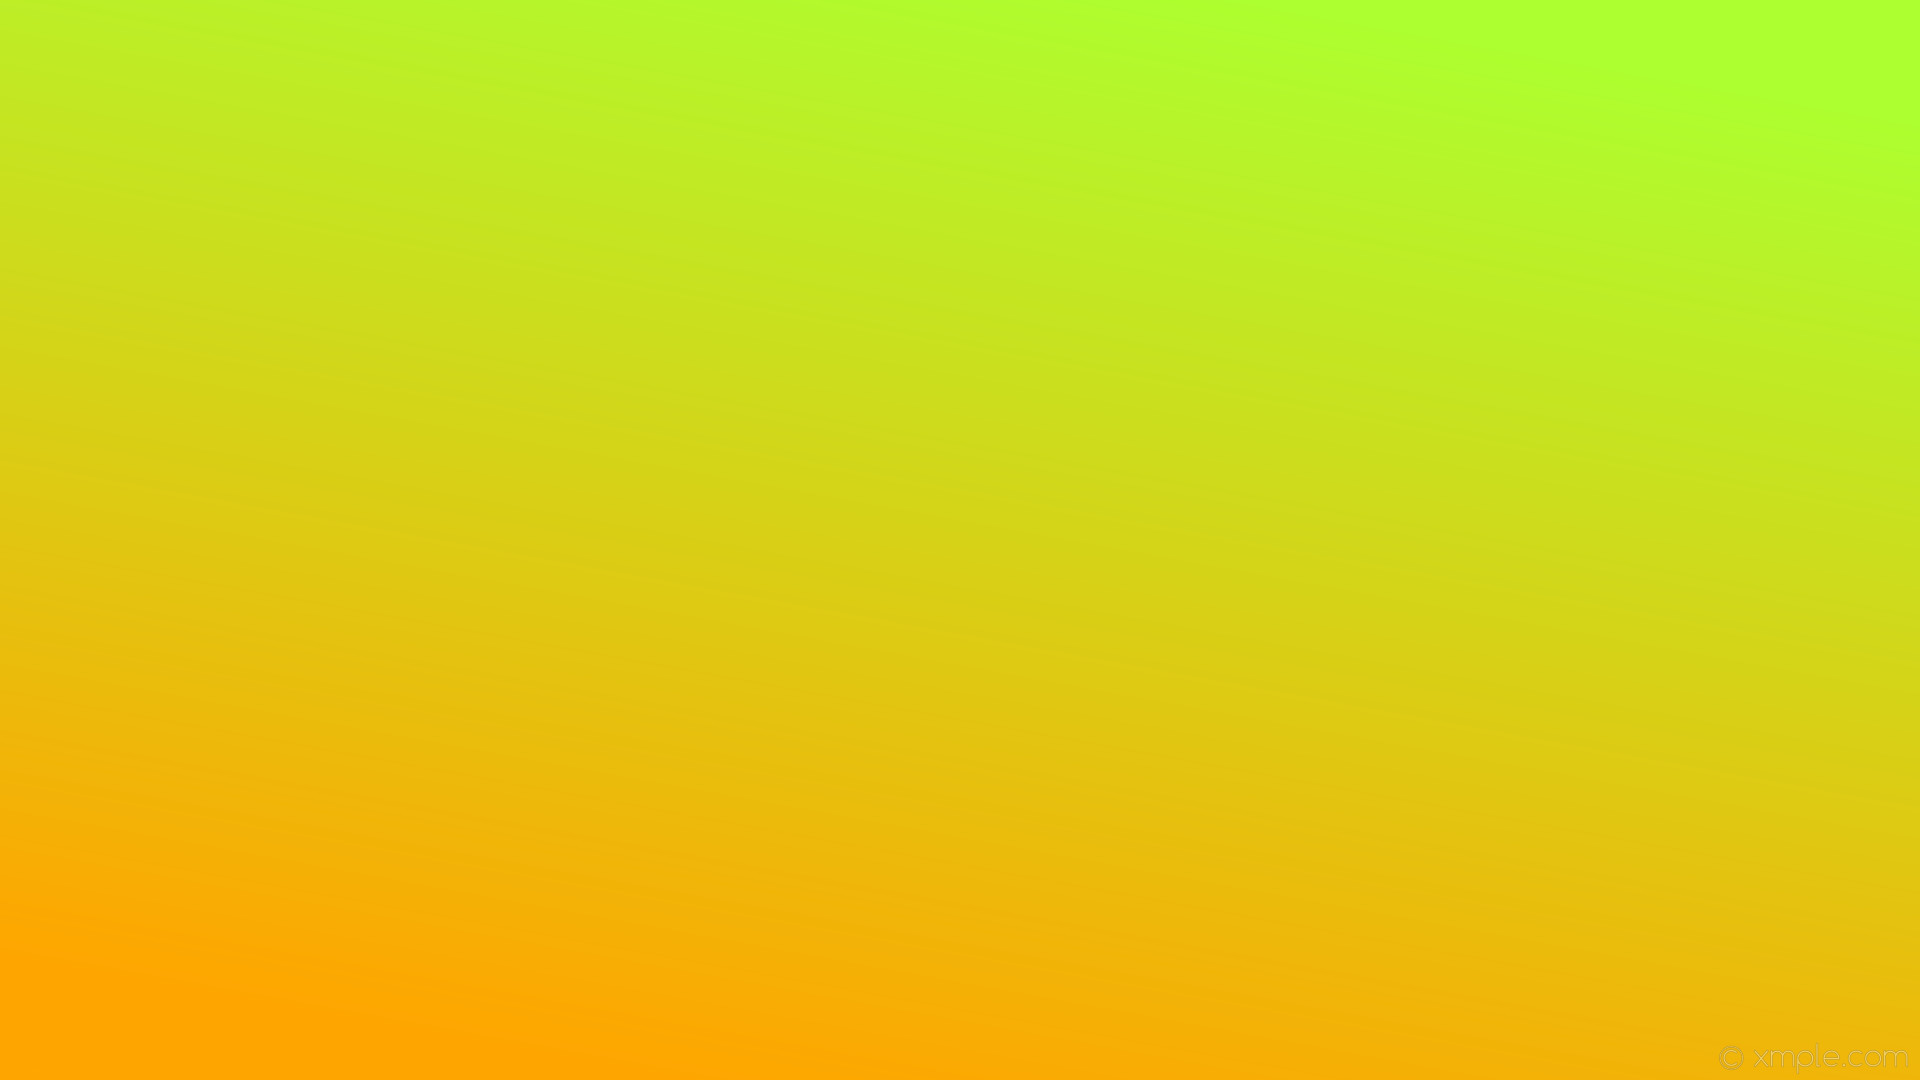 1920x1080 wallpaper gradient linear green orange green yellow #ffa500 #adff2f 240Â°